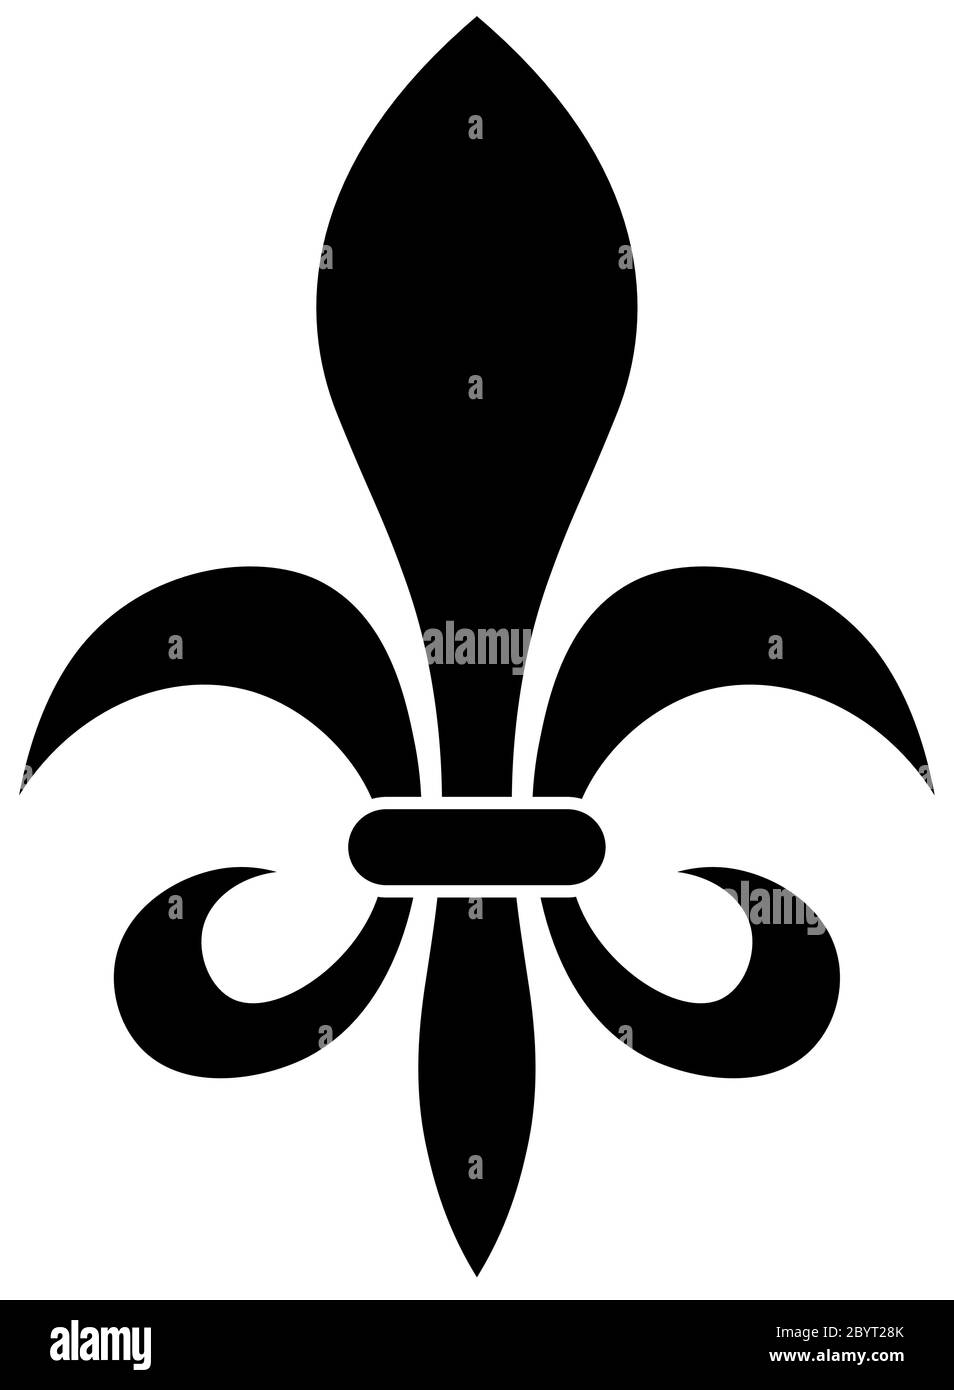 Il fleur-de-lis o fiore-de-luce segno di giglio utilizzato come disegno decorativo o simbolo in eraldry. Semplice ed elegante immagine vettoriale nera su sfondo bianco. Illustrazione Vettoriale